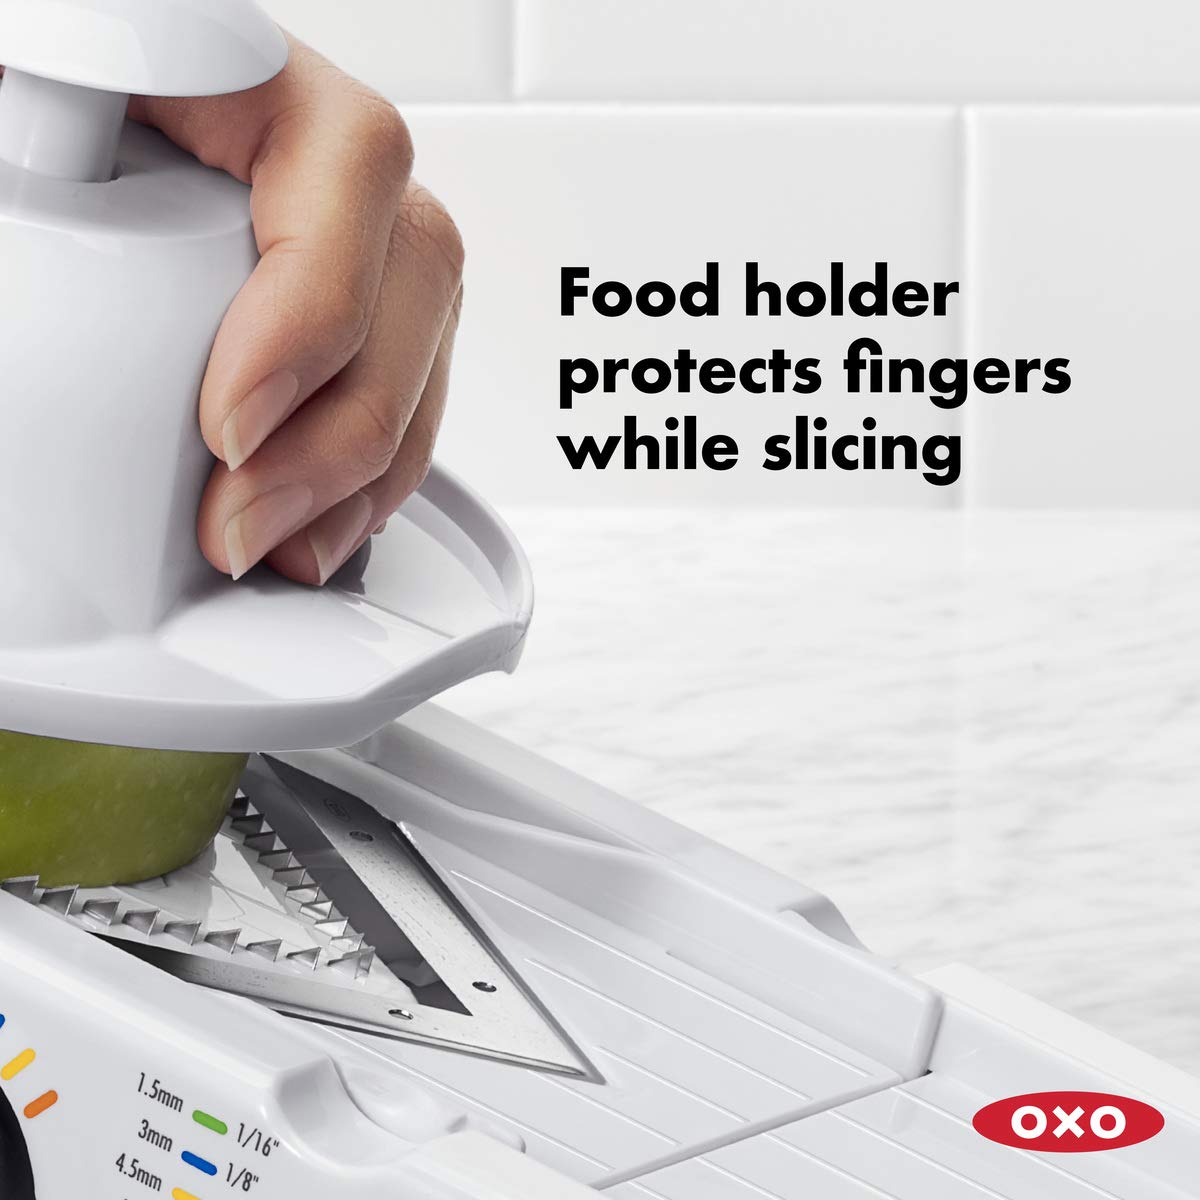 OXO Good Grips V-Blade Mandoline Slicer, White